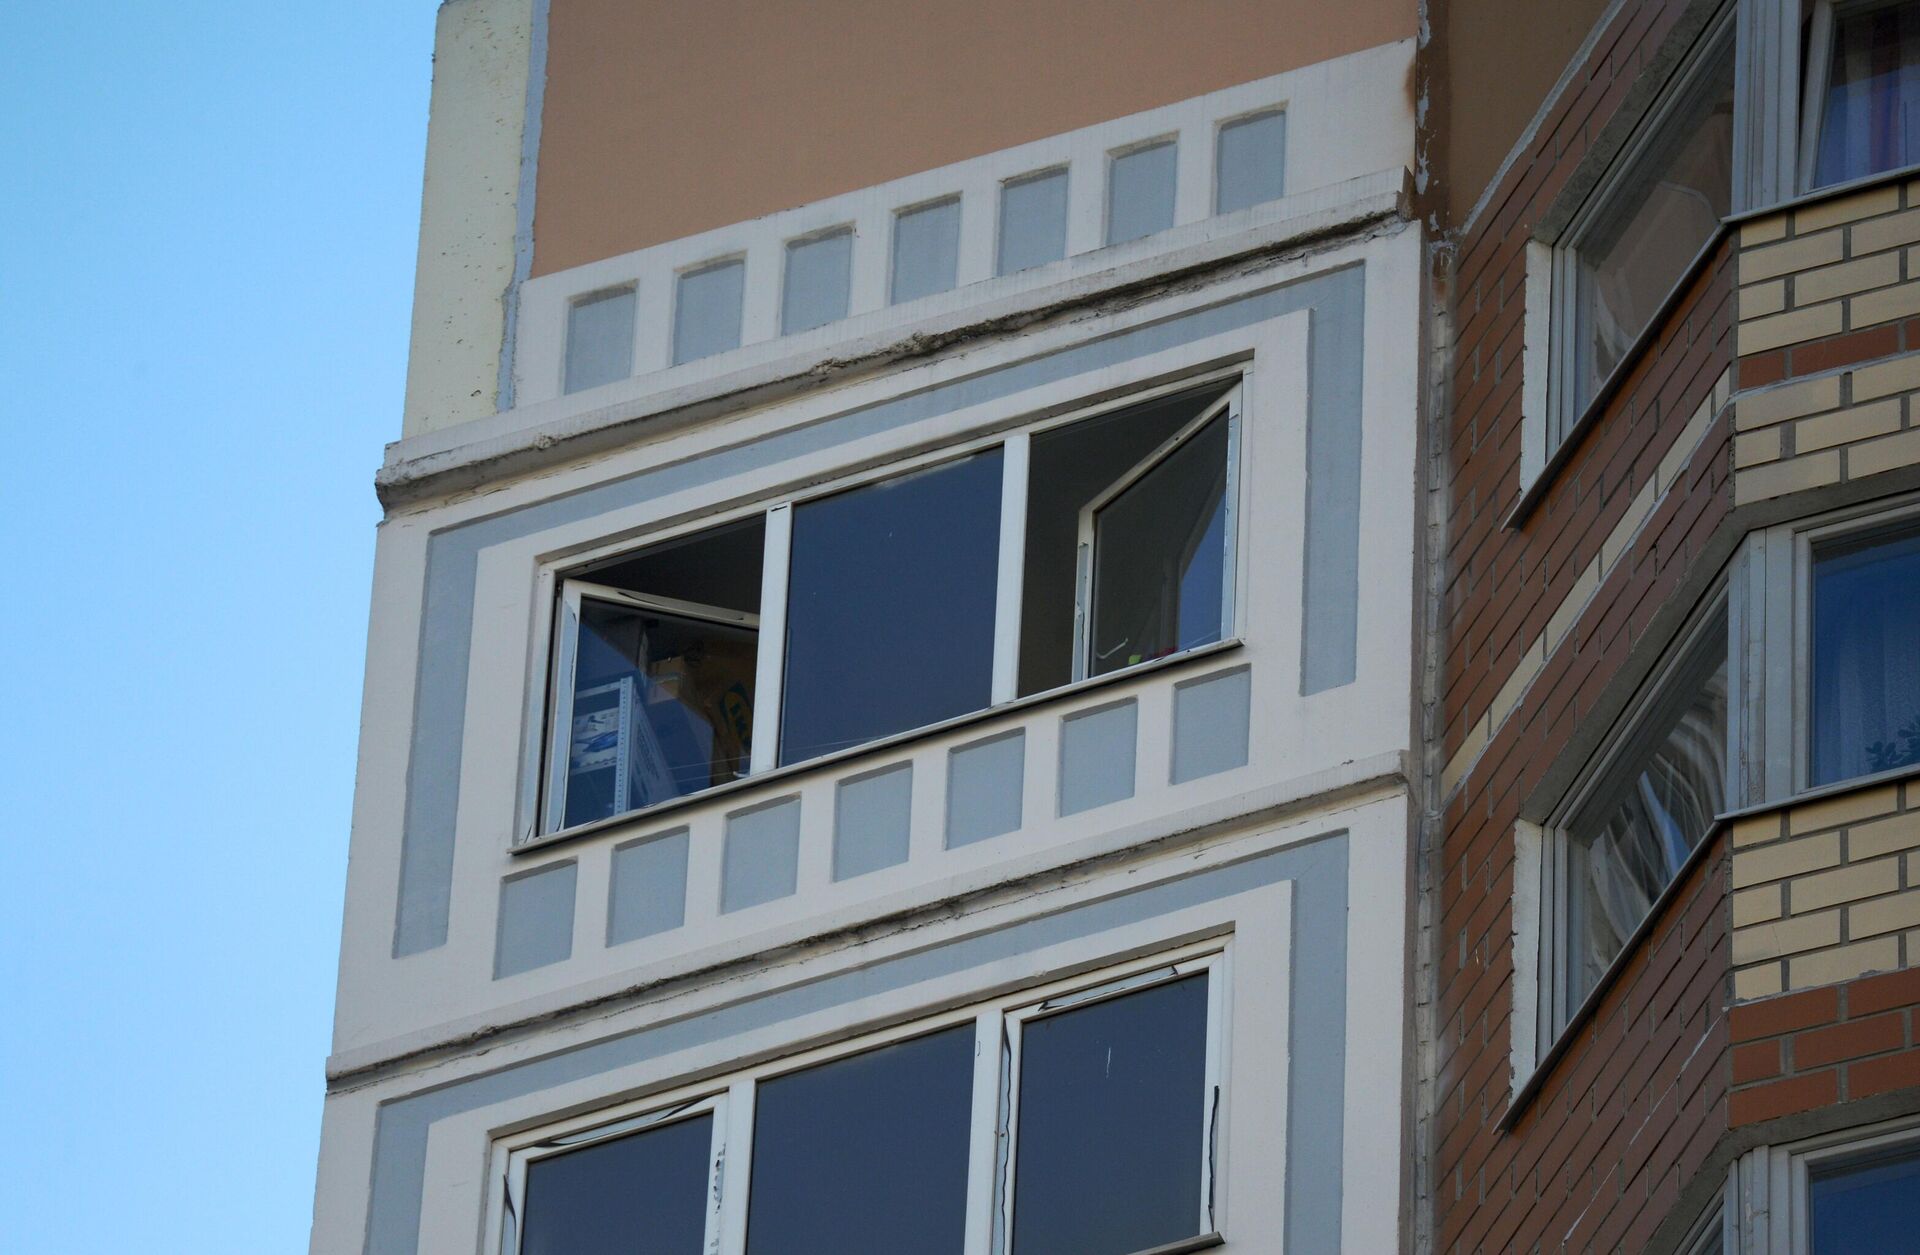 Окна жилого дома на улице Левобережной в Москве, где были обнаружены тела женщины и двух детей - РИА Новости, 1920, 14.10.2021